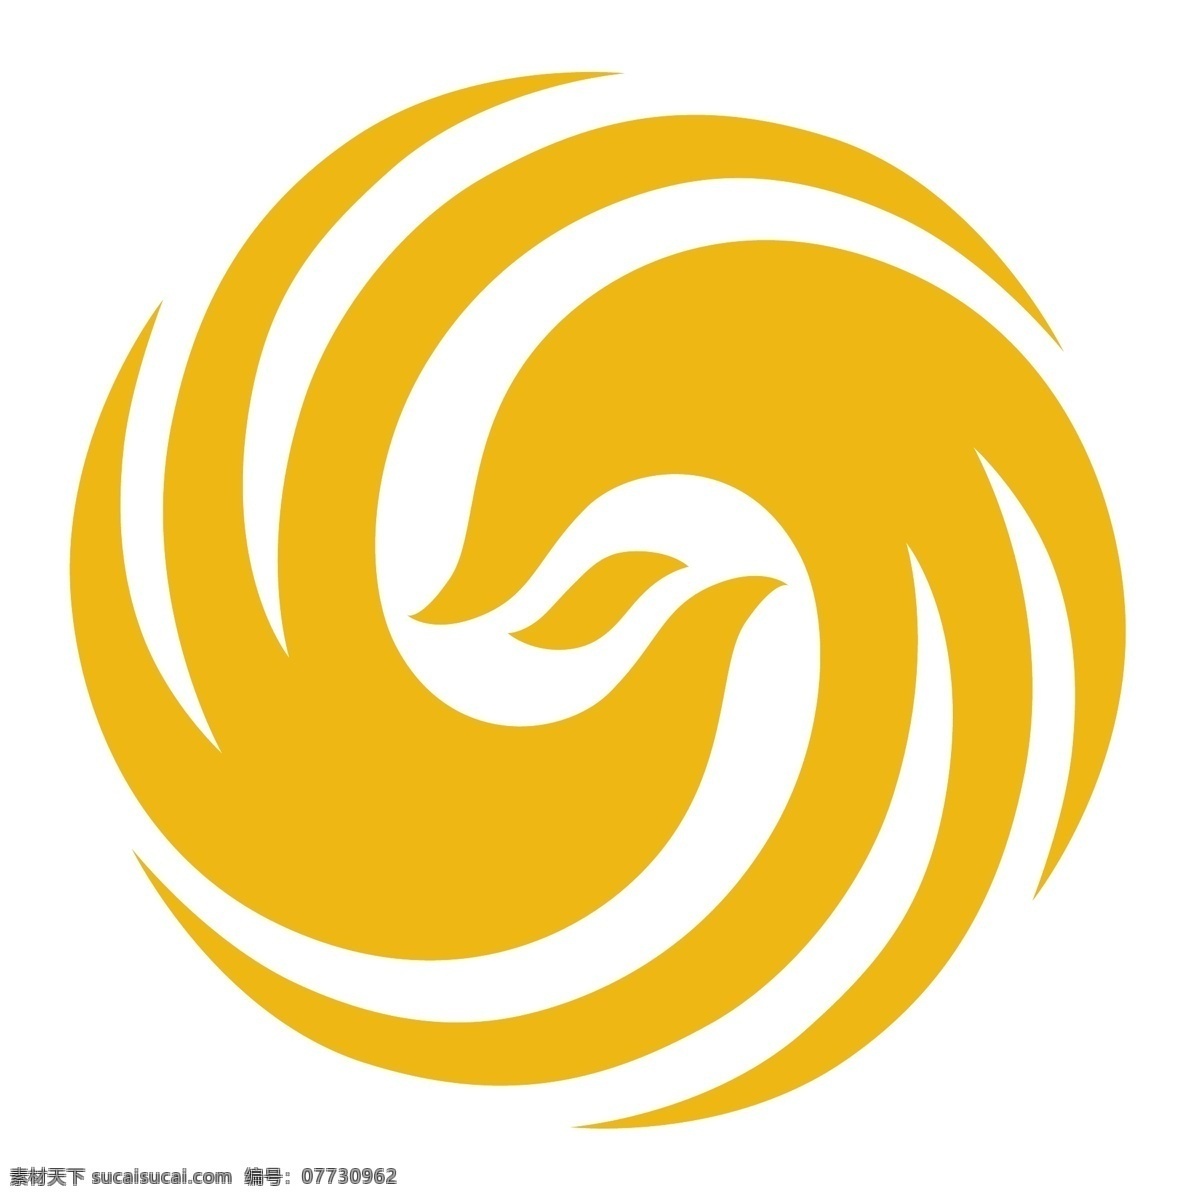 凤凰卫视 免费 标志 标识 psd源文件 logo设计